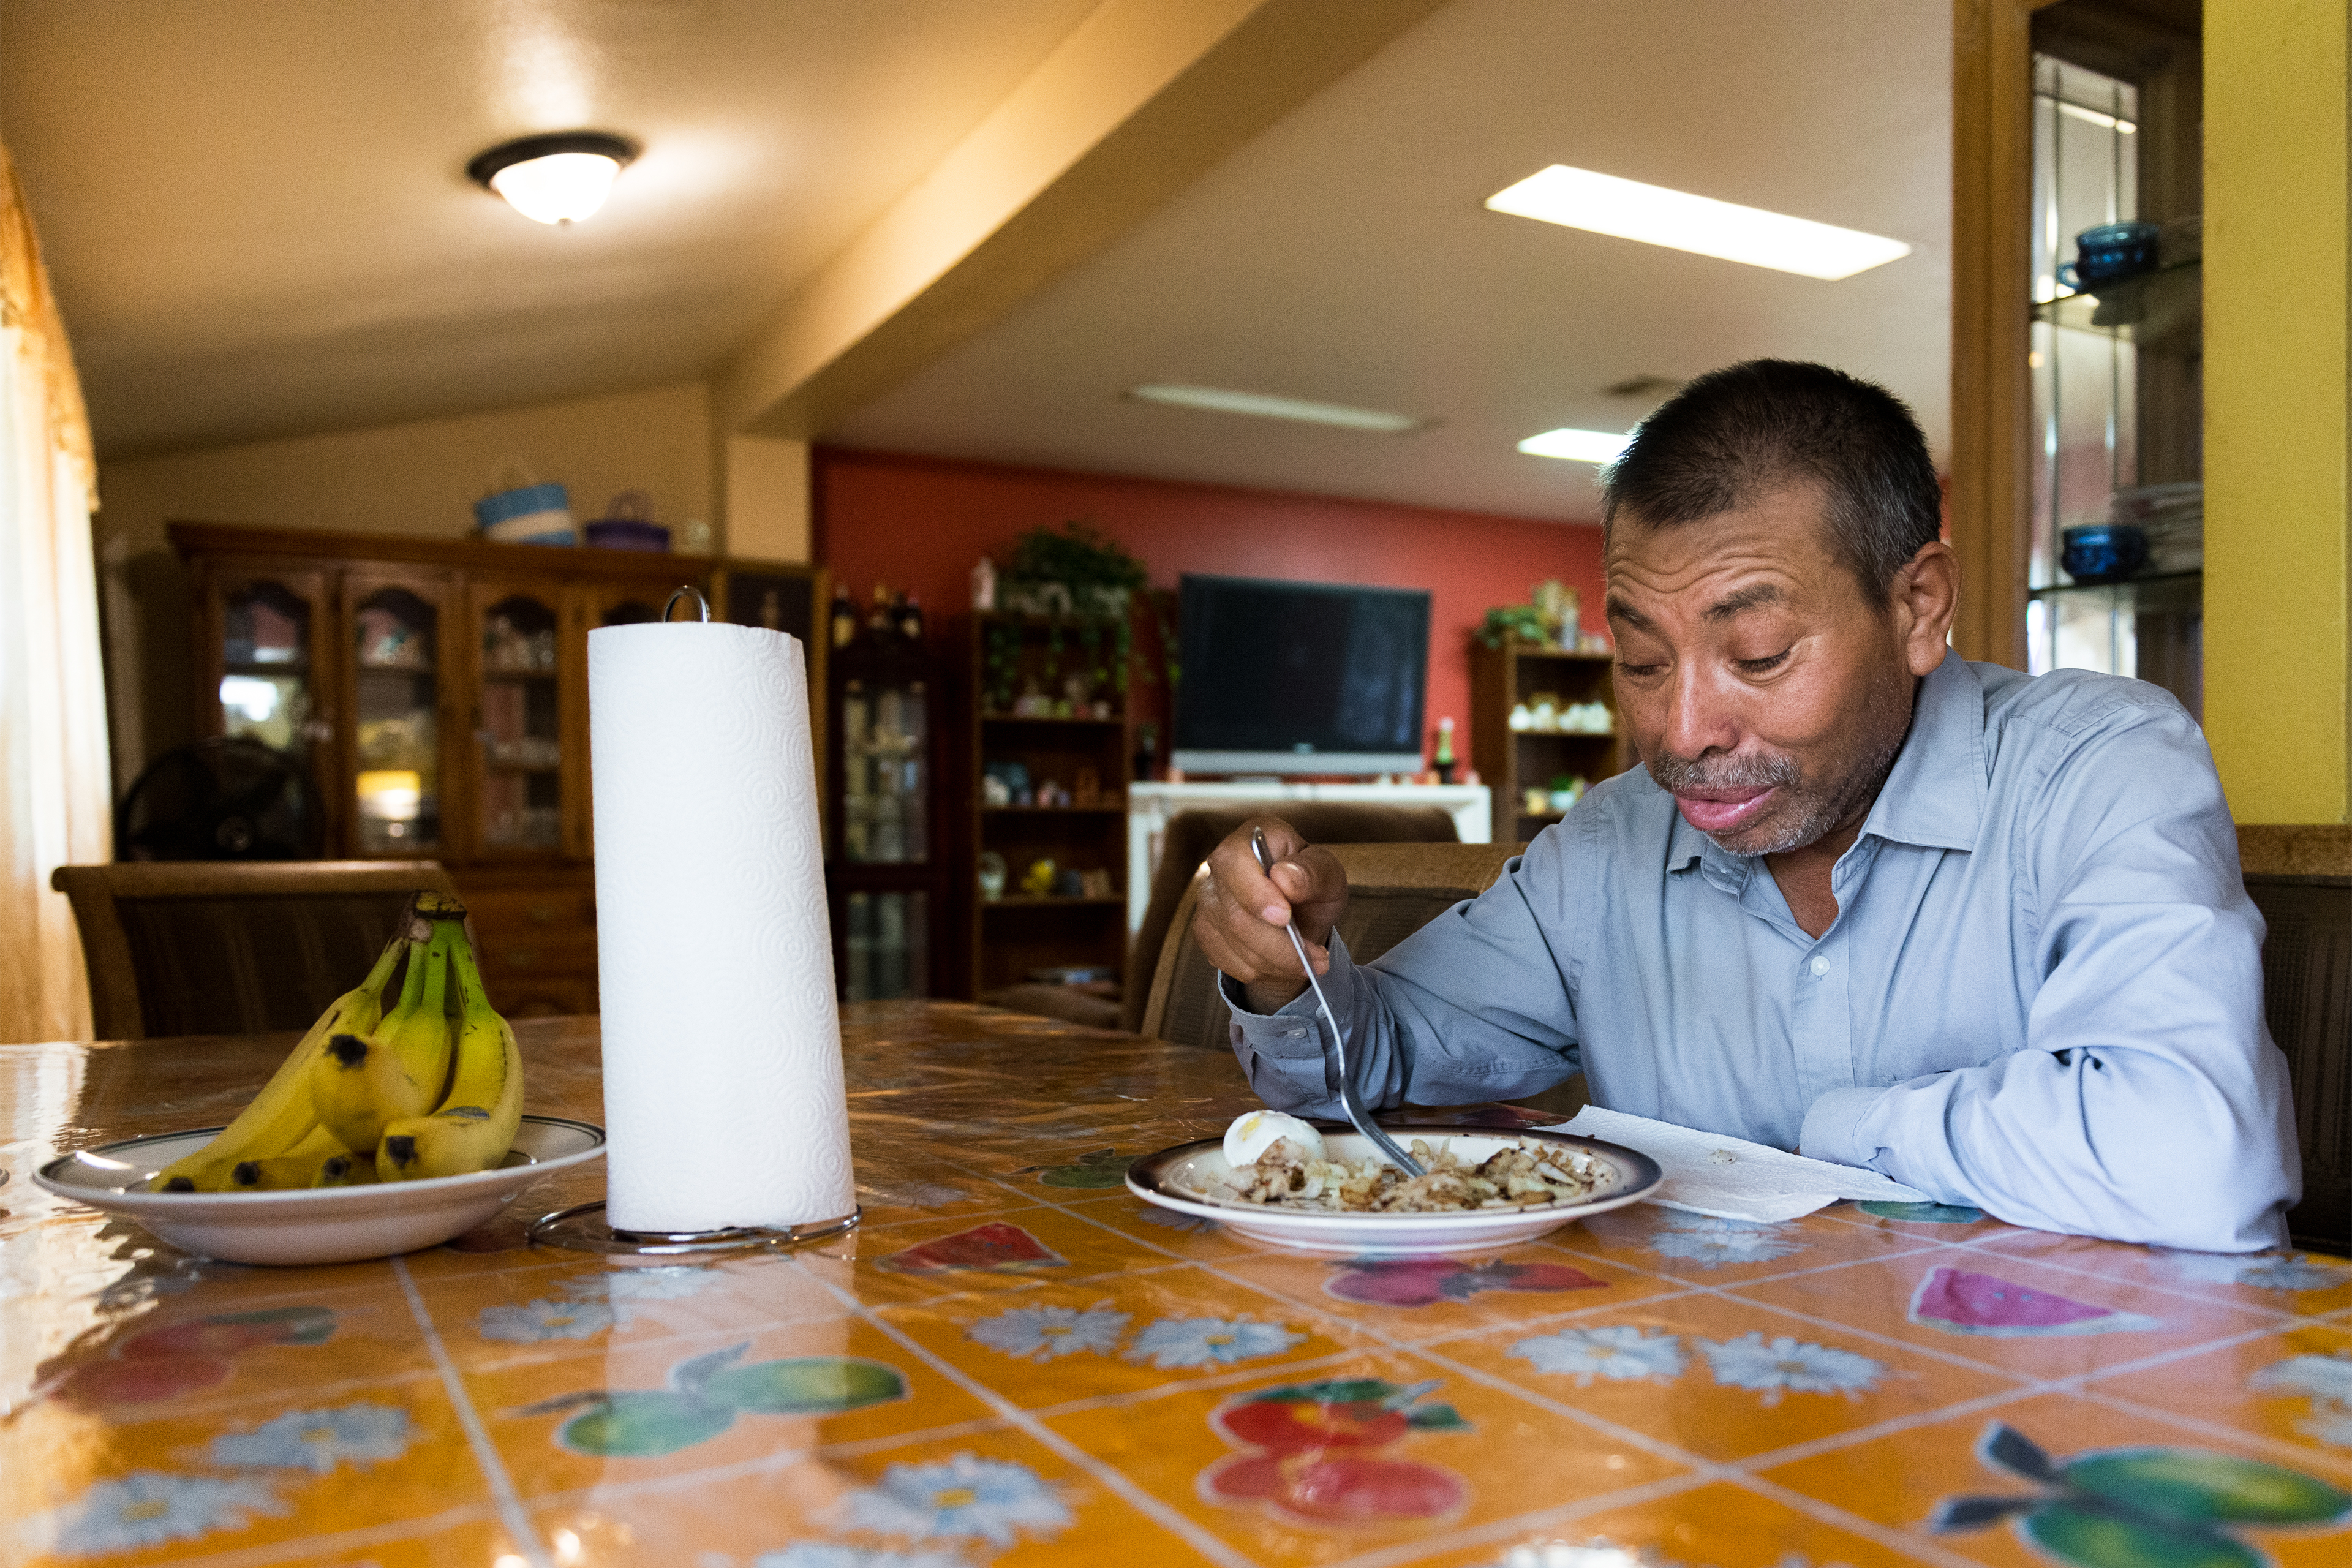 Vidal Fonseca terlihat sedang makan di sebuah meja di rumahnya.  Gulungan handuk kertas dan sepiring pisang juga ada di atas meja.